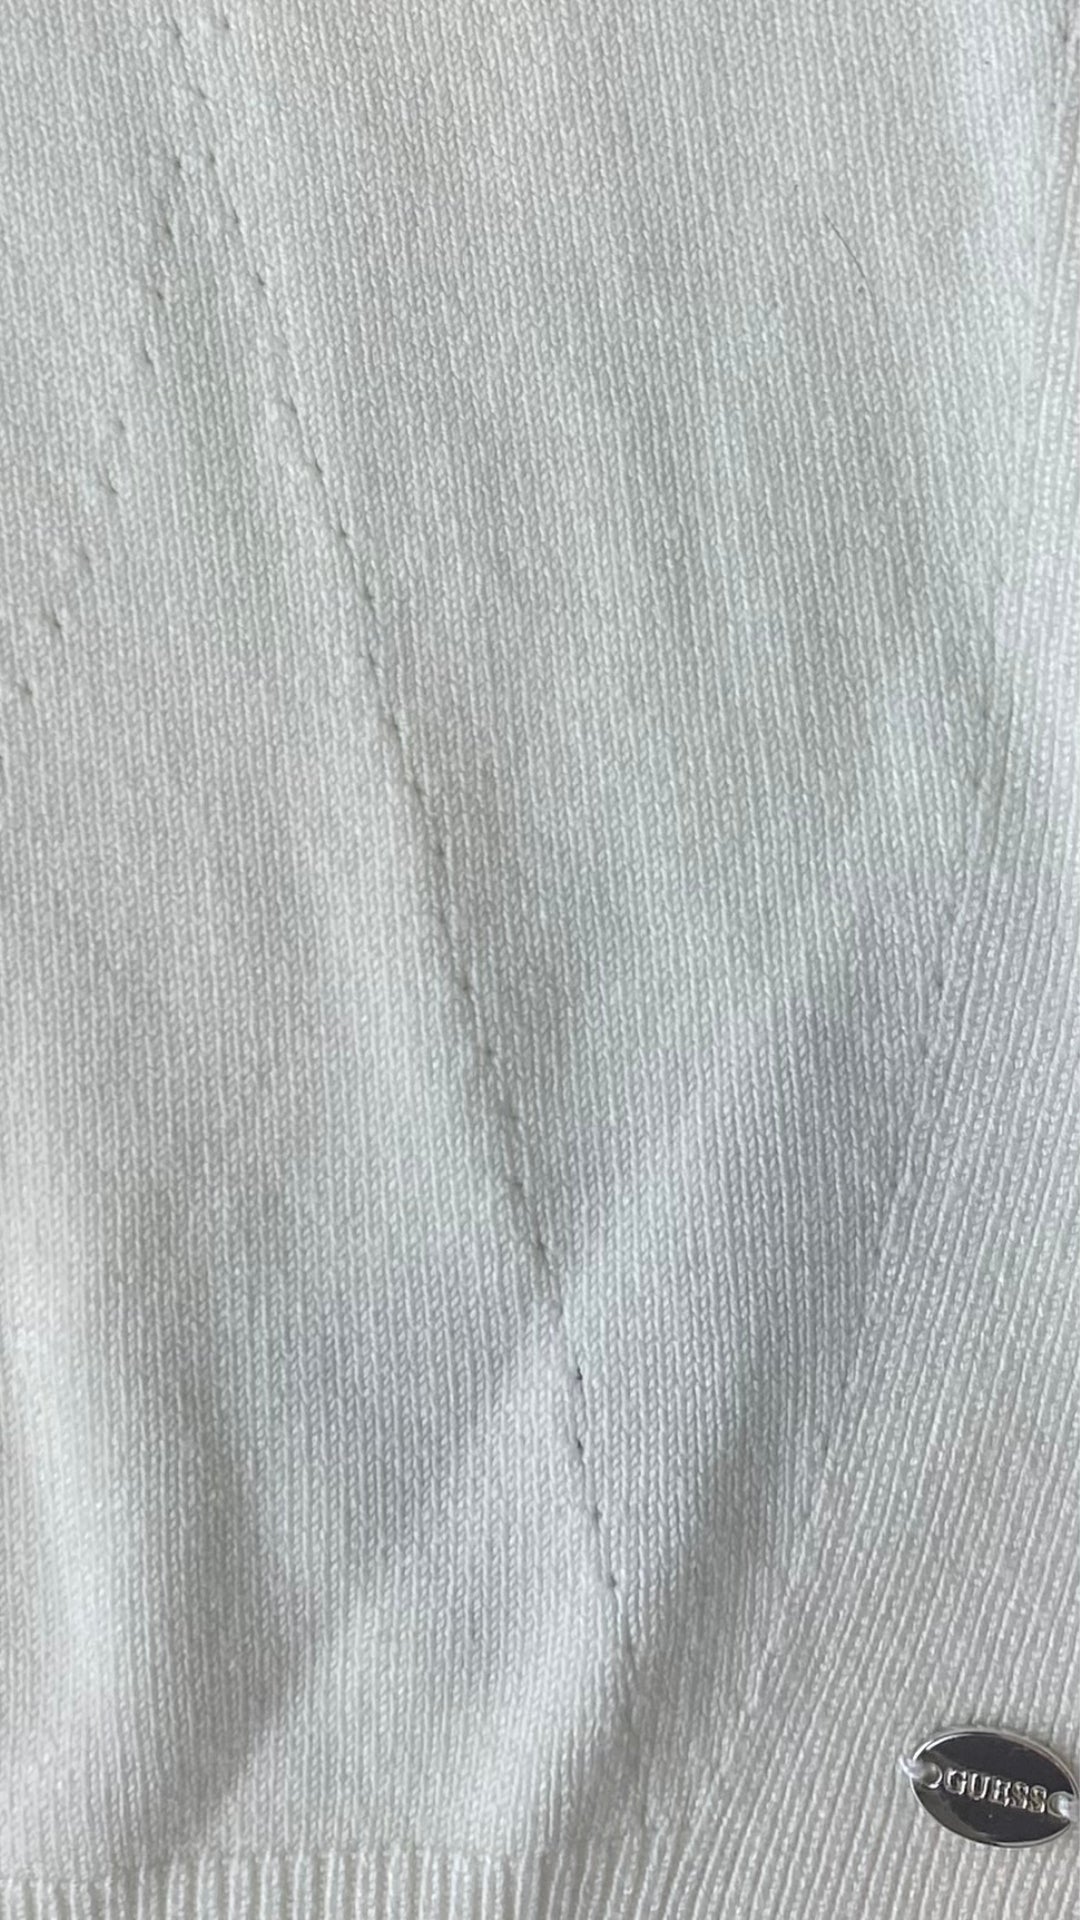 Chandail crème en tricot Guess à une manche. Vue de détails dans le tissu.